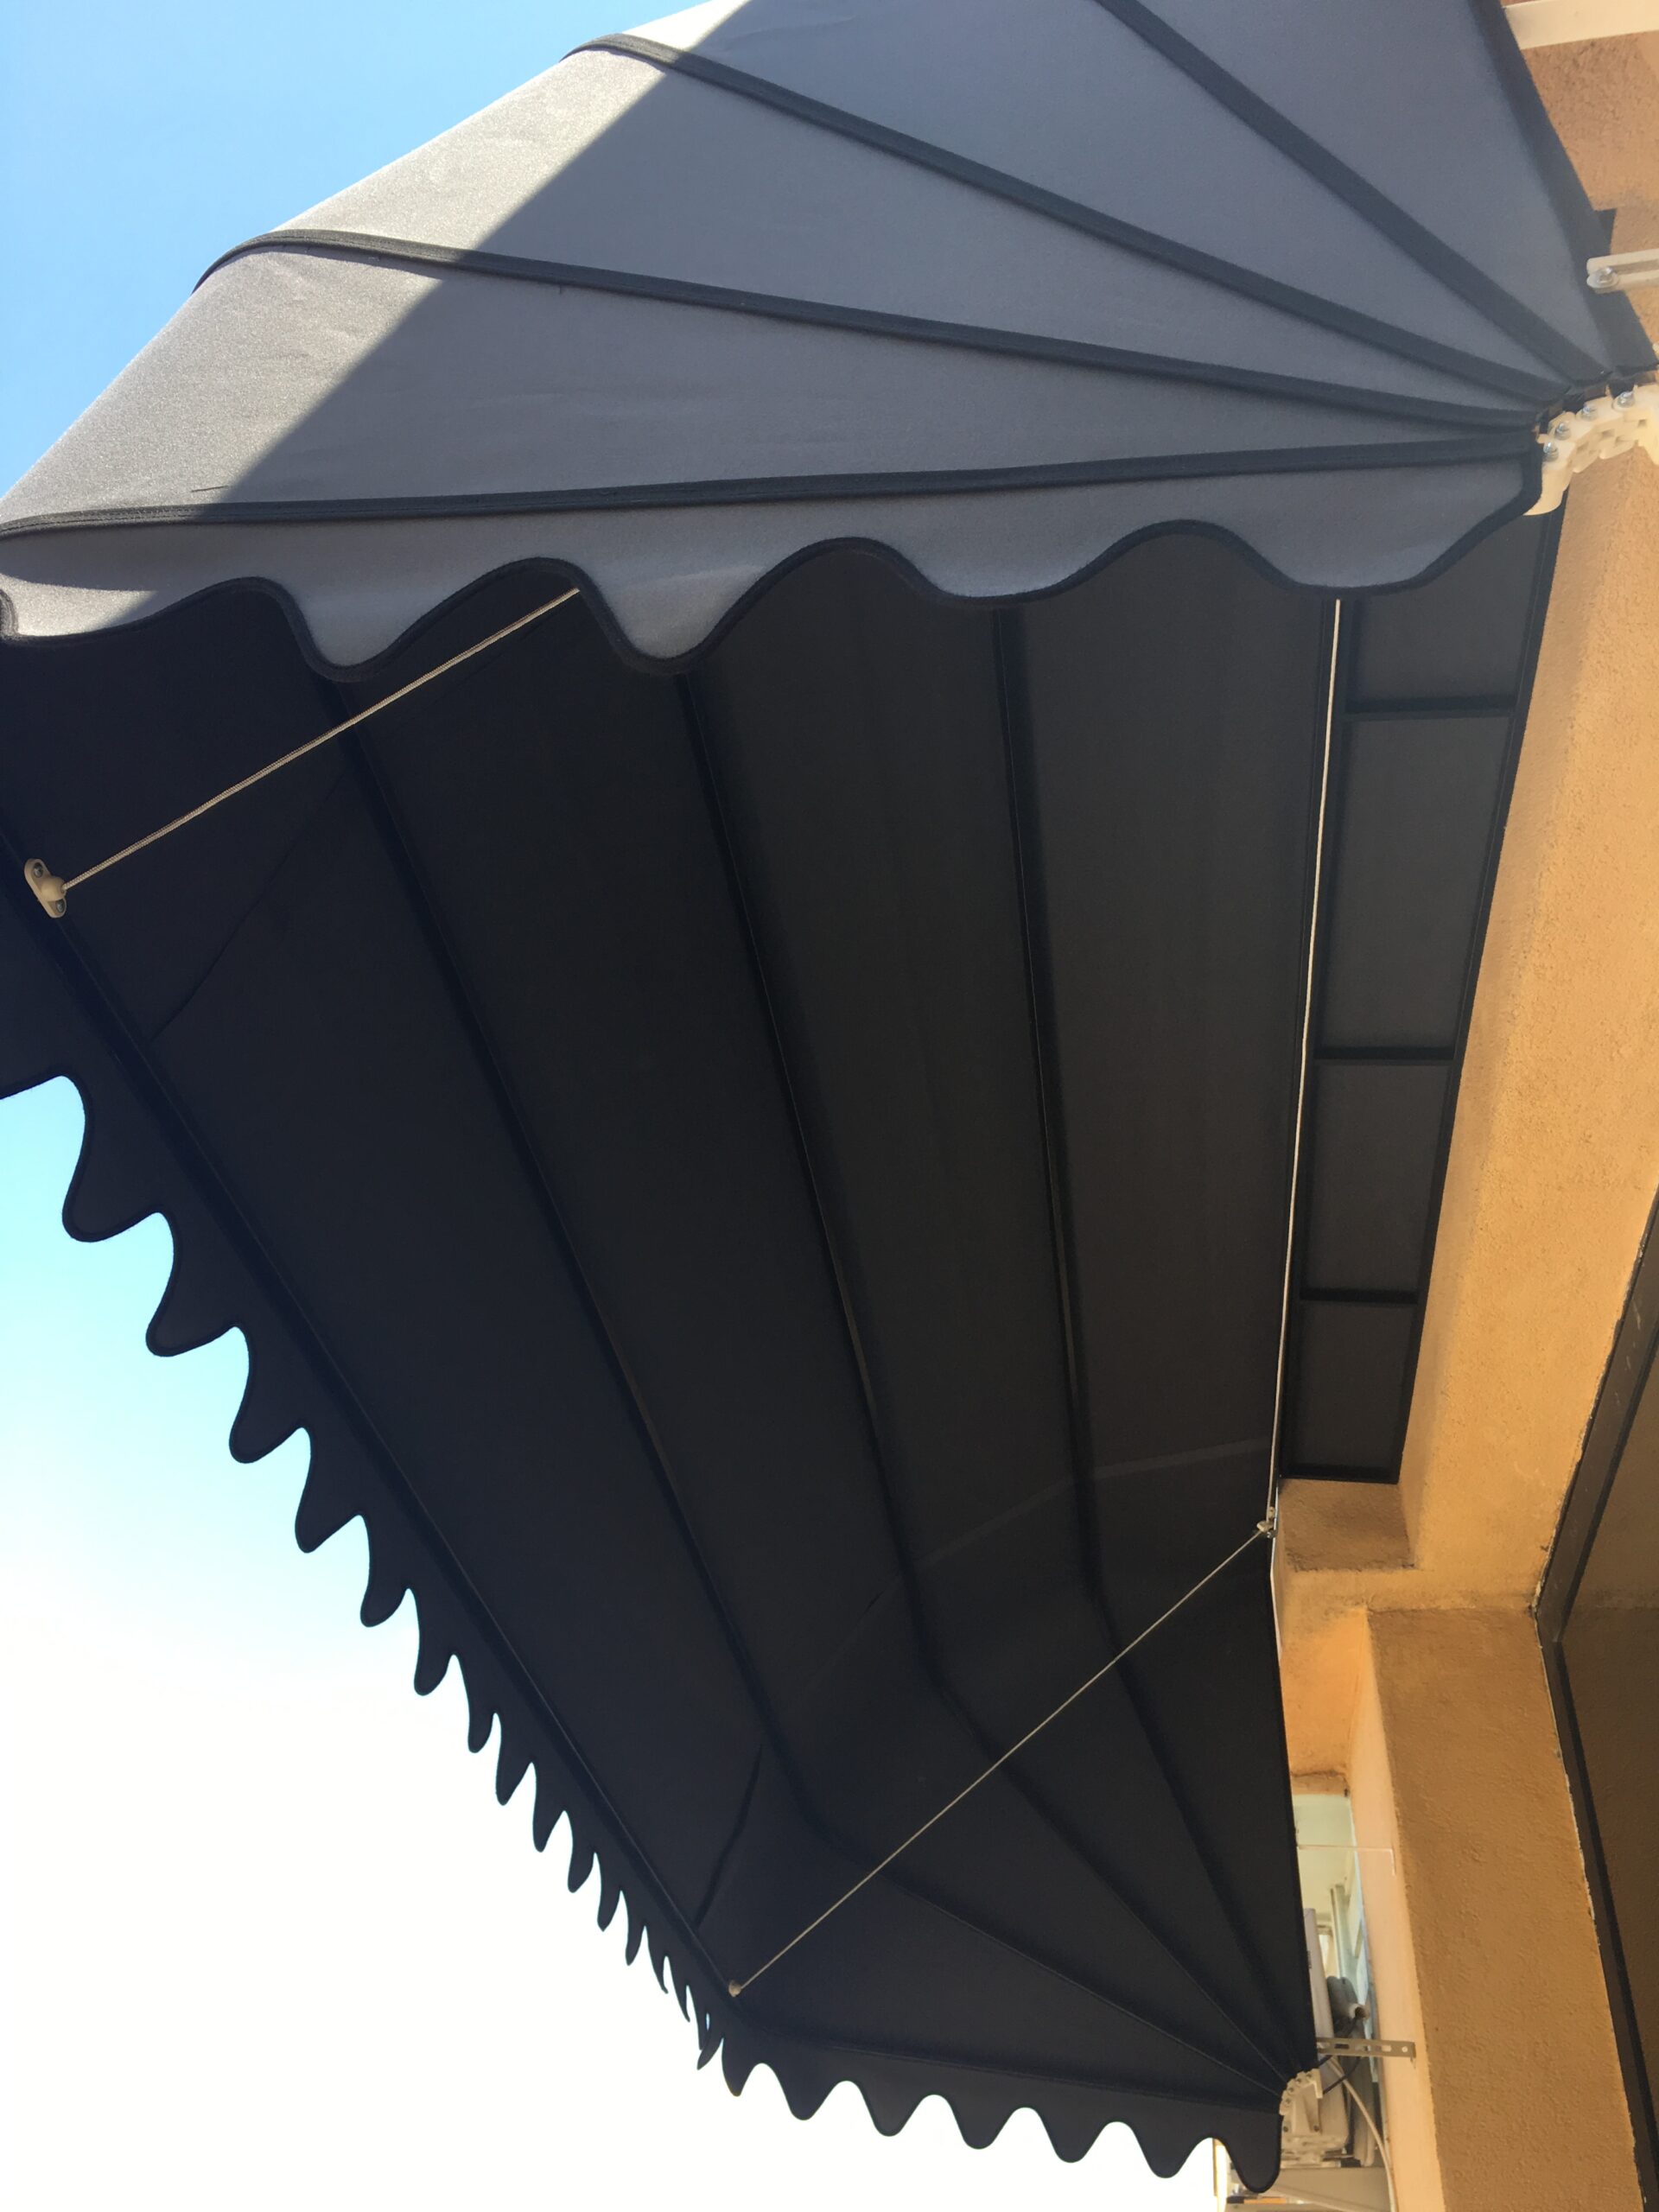 Körüklü Balkon Tentesi scaled - Balkon Tente Modelleri